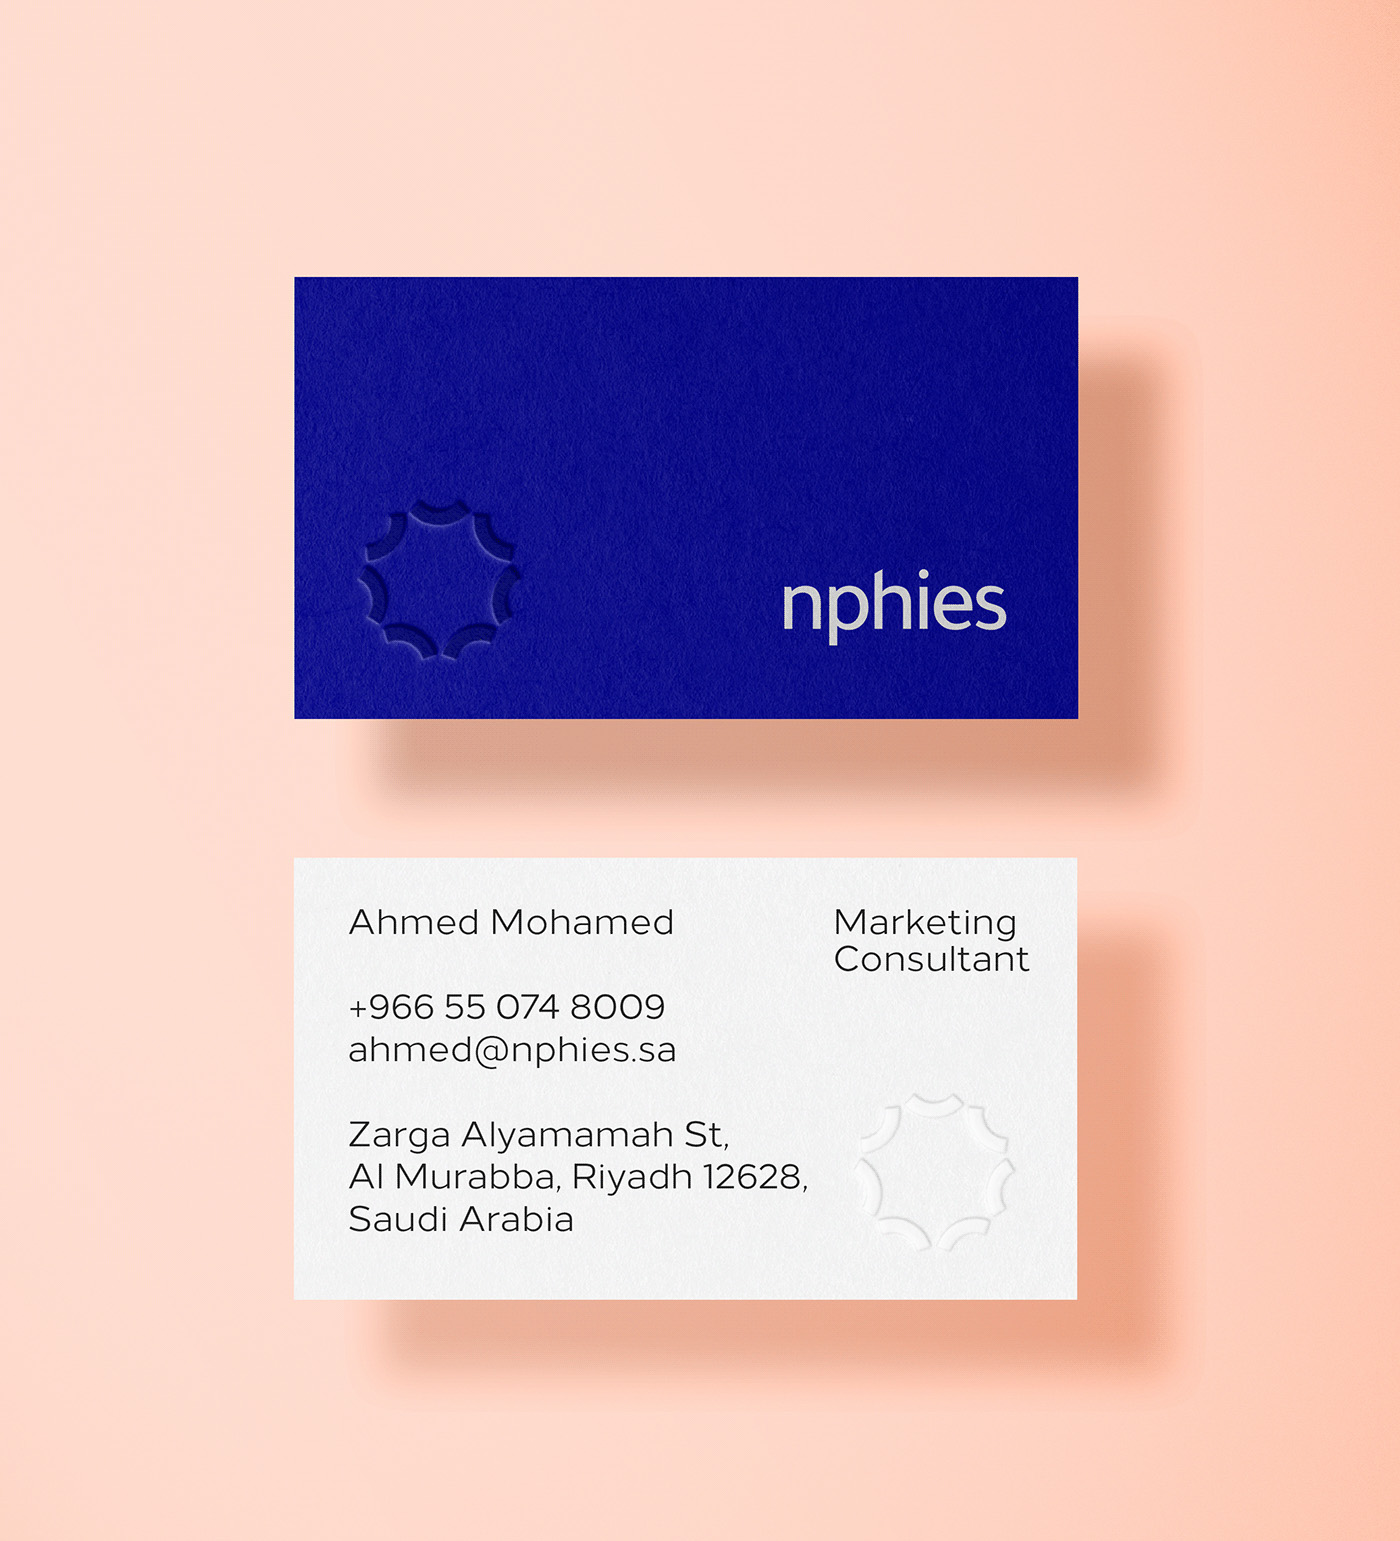 Nphies数字健康平台视觉形象设计